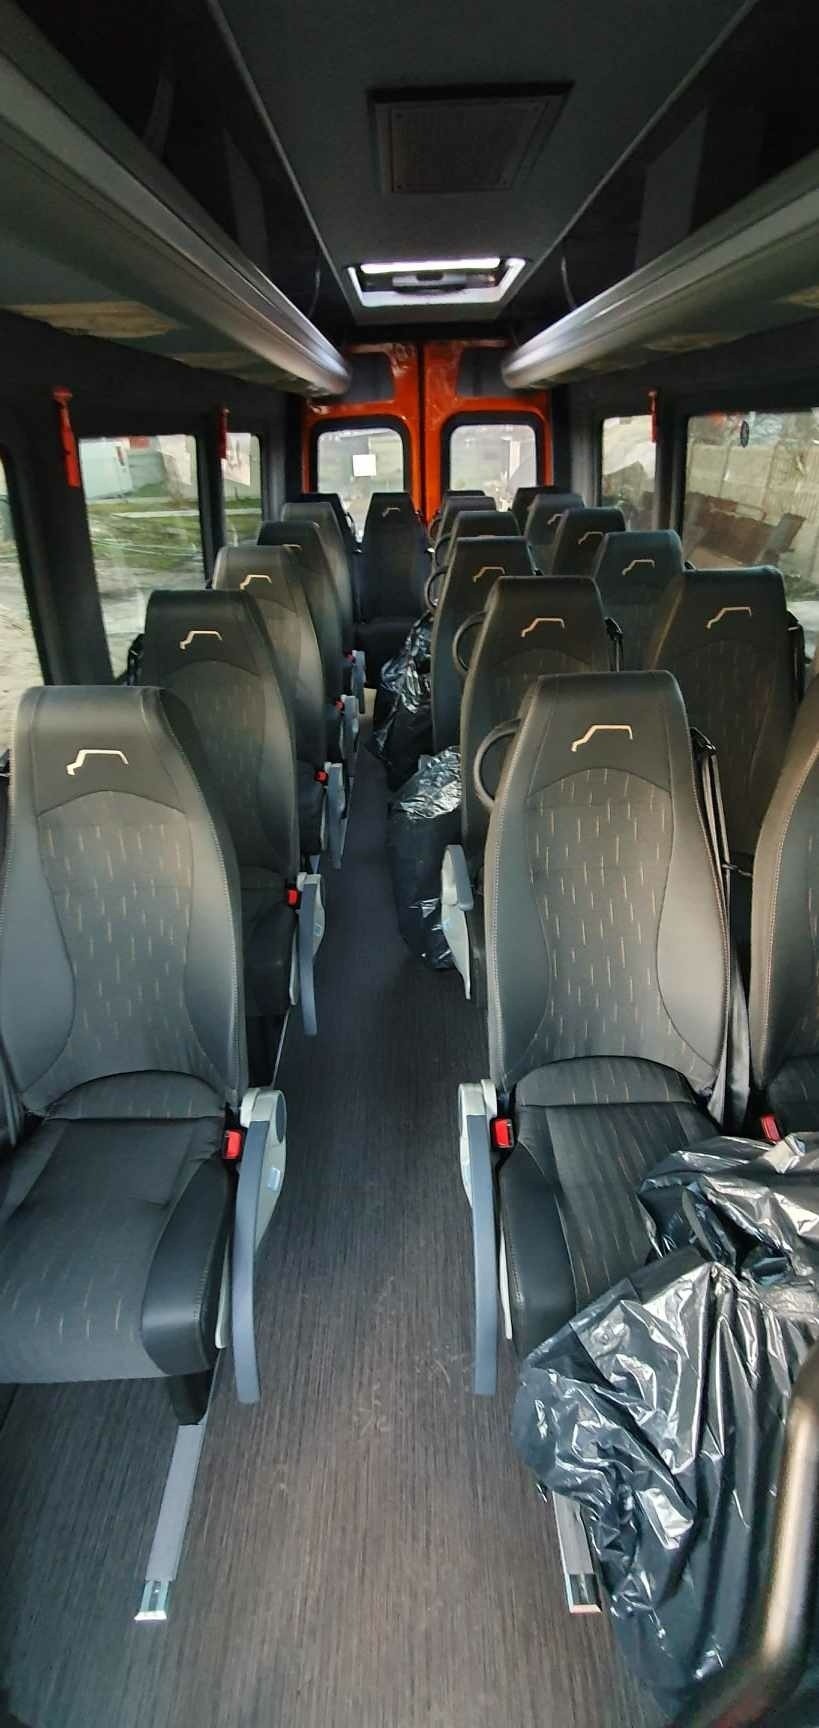 Nowy autobus szkolny dla uczniów z terenu Gminy i Miasta Przysucha został zakupiony przez władze miejskie